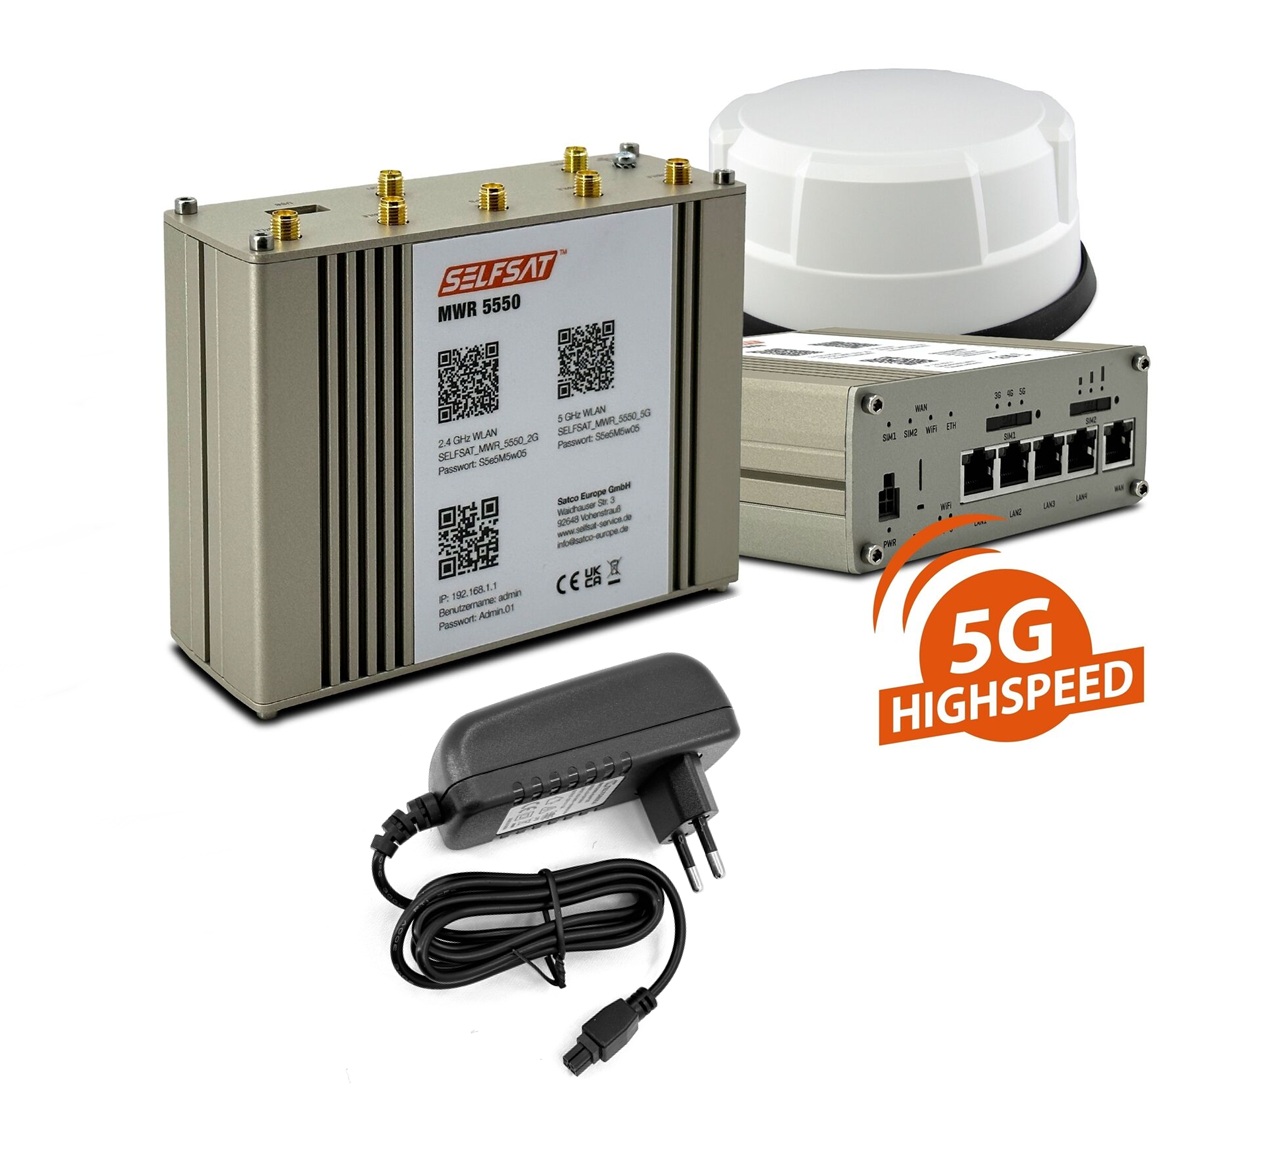 SELFSAT MWR 5550 mit Panorama Antenne weiß (4 x 5G/4G, 2 x WLAN, 1 x GPS, 1x EU 18W Netzteil Gratis )